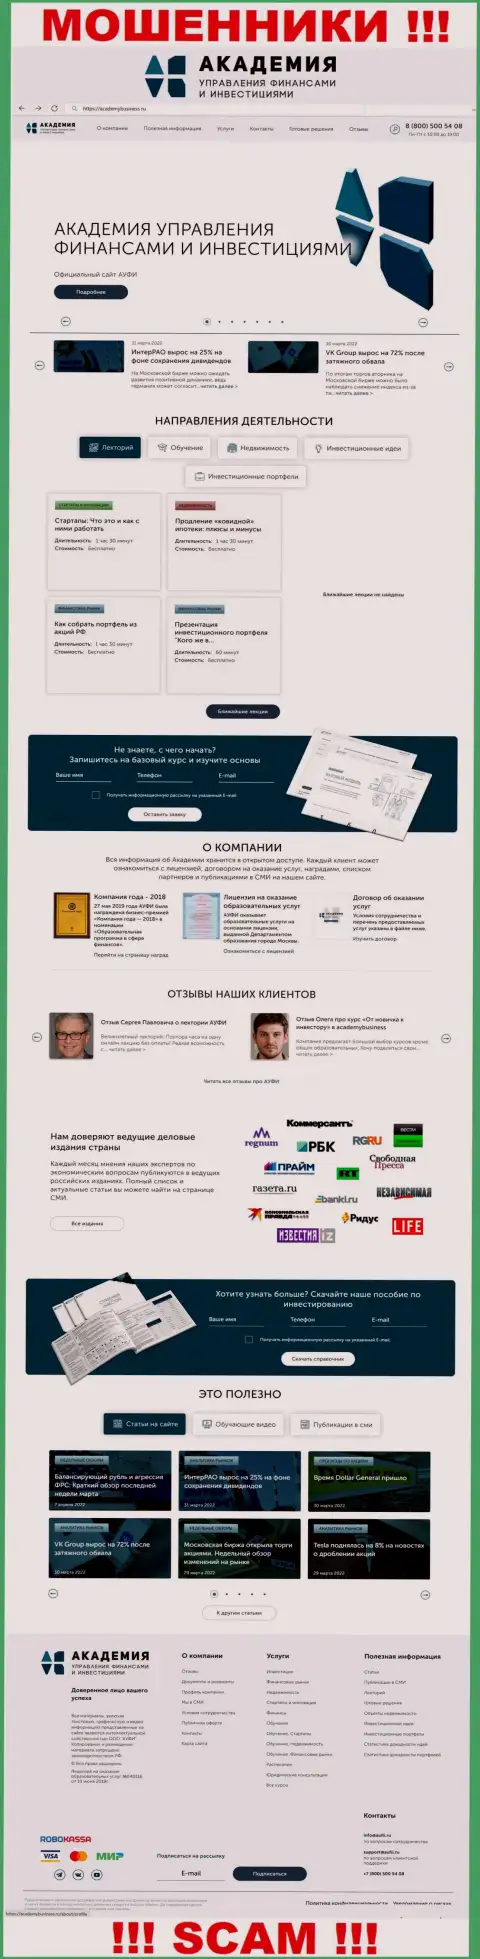 Веб-портал жульнической конторы Академия управления финансами и инвестициями - AcademyBusiness Ru